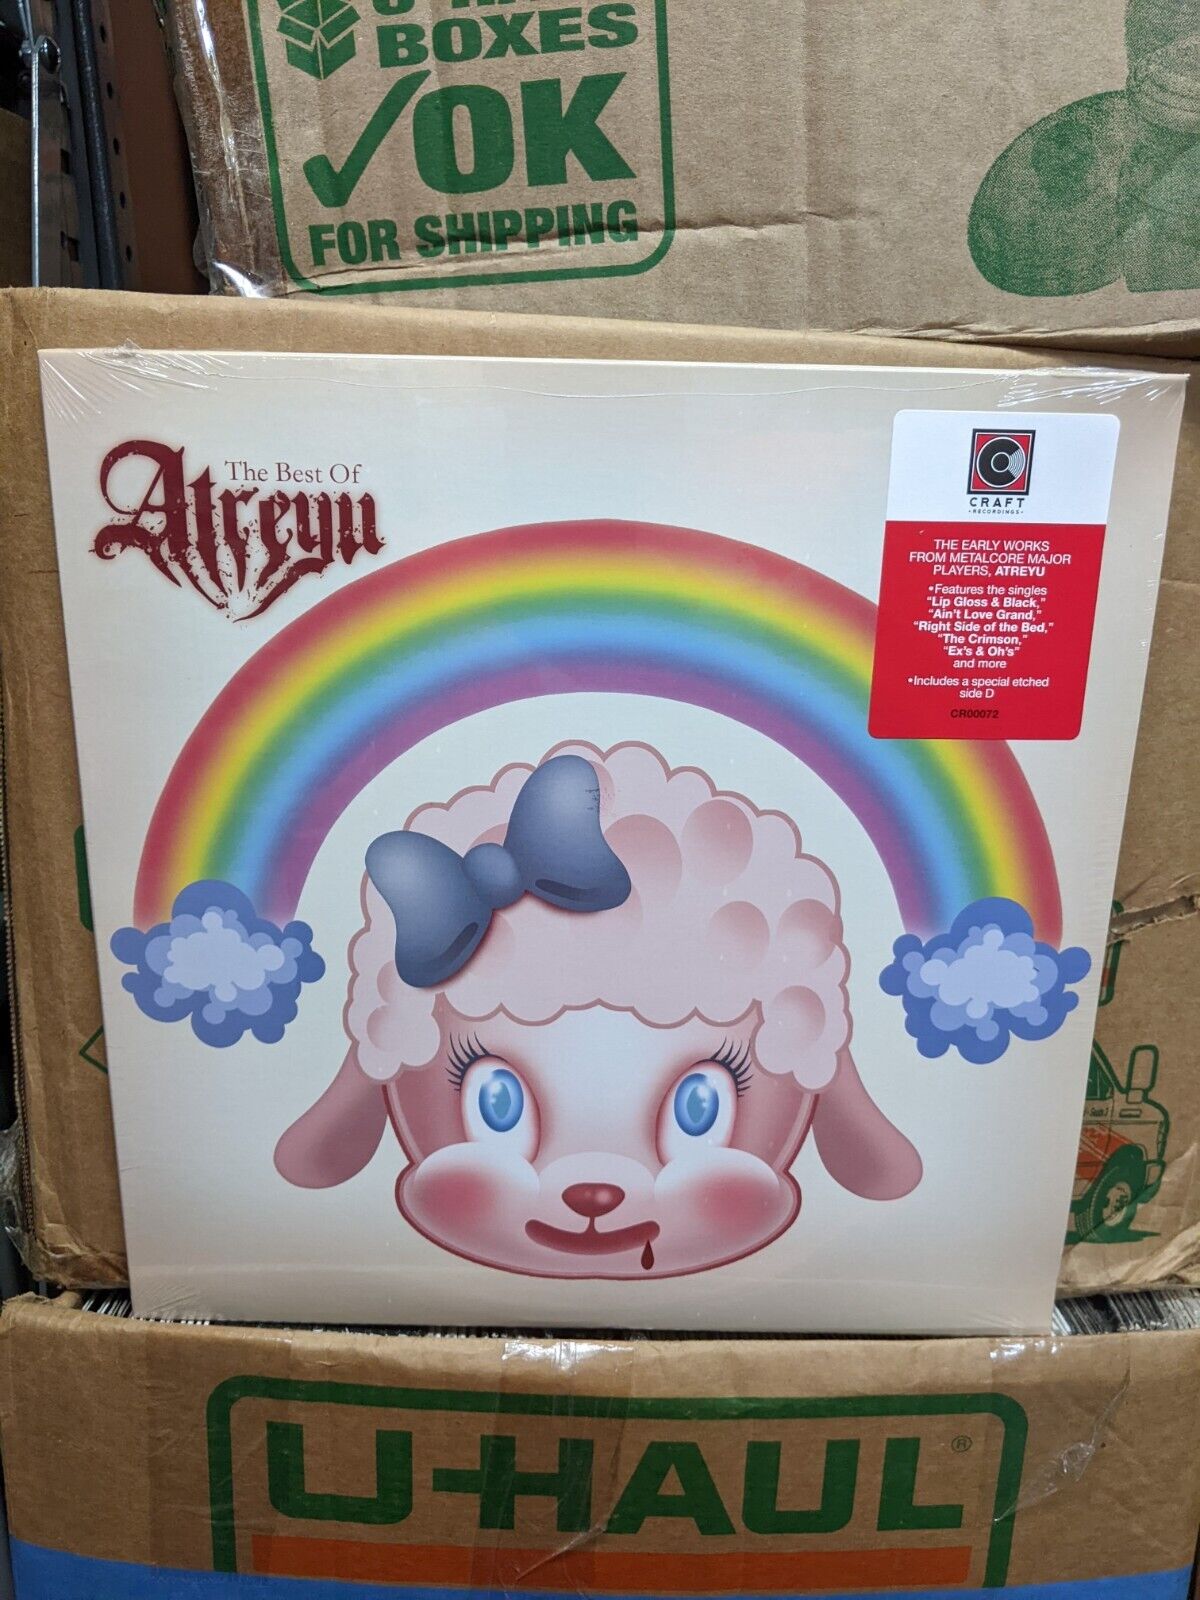 Best of Atreyu by Atreyu (Record, 2018) BRAND NEW SEALED Shelfwear *